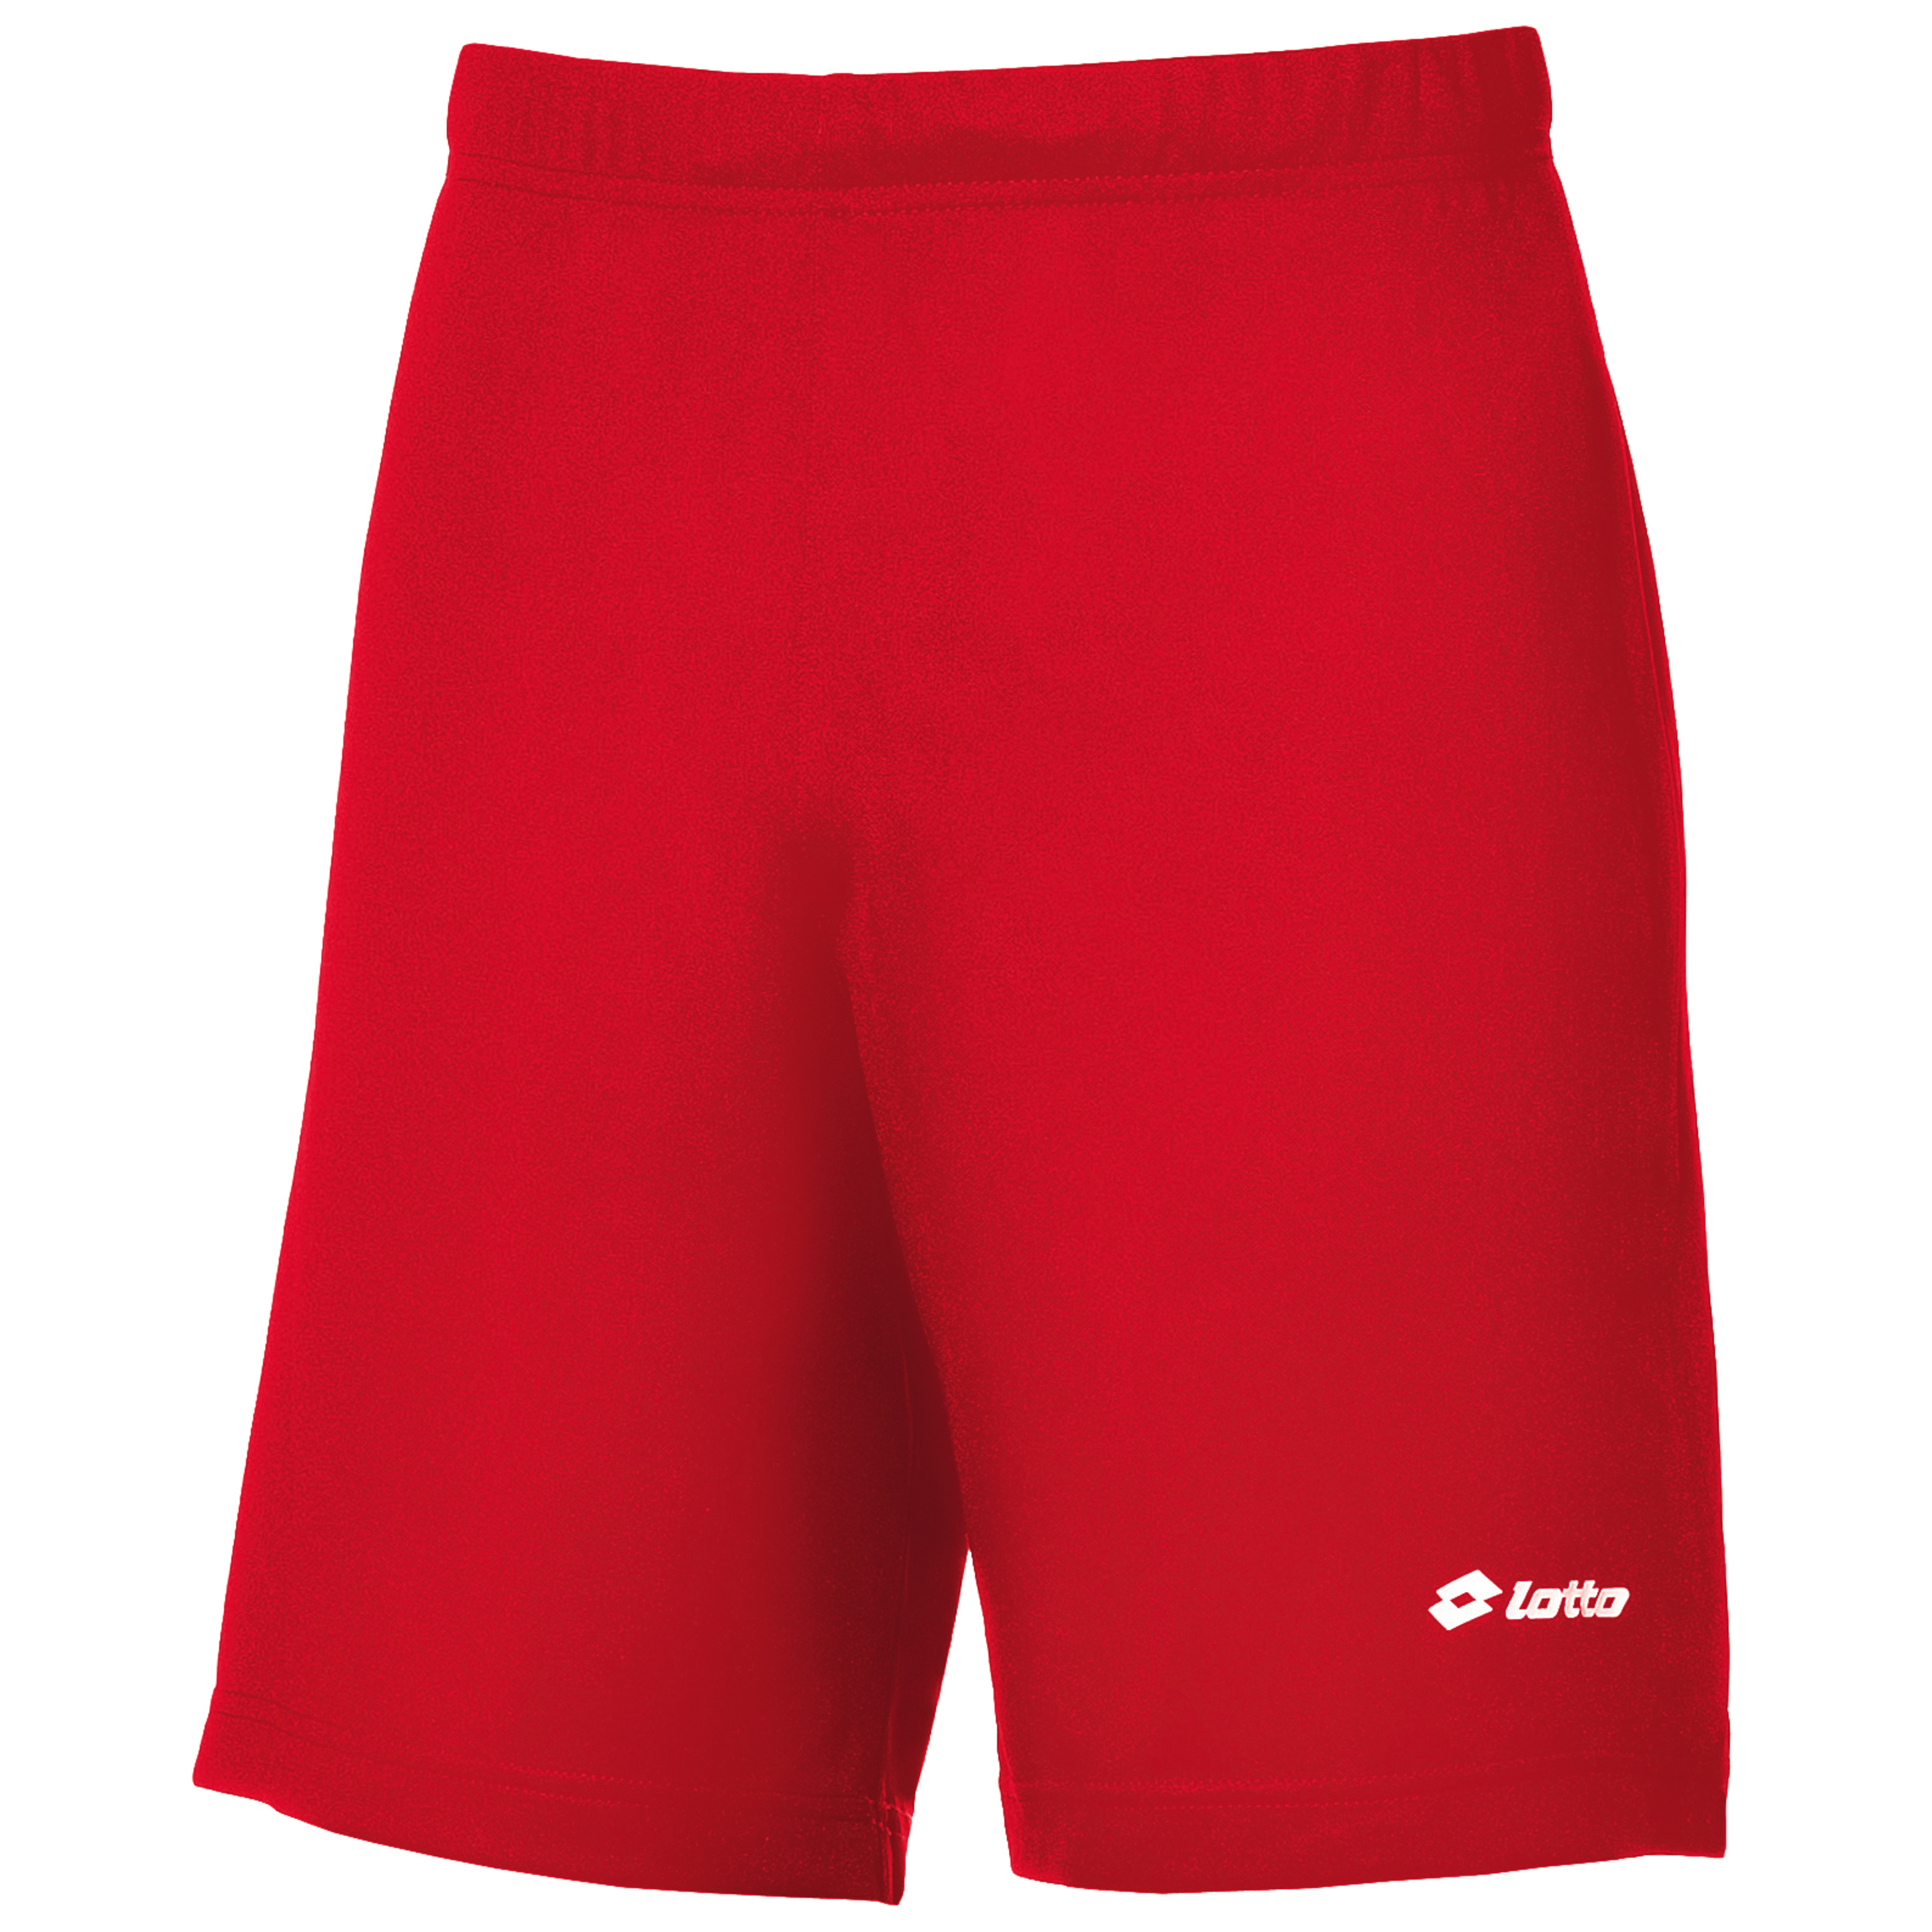 Lotto - Pantalones Cortos De Deporte Modelo Omega - rojo - 